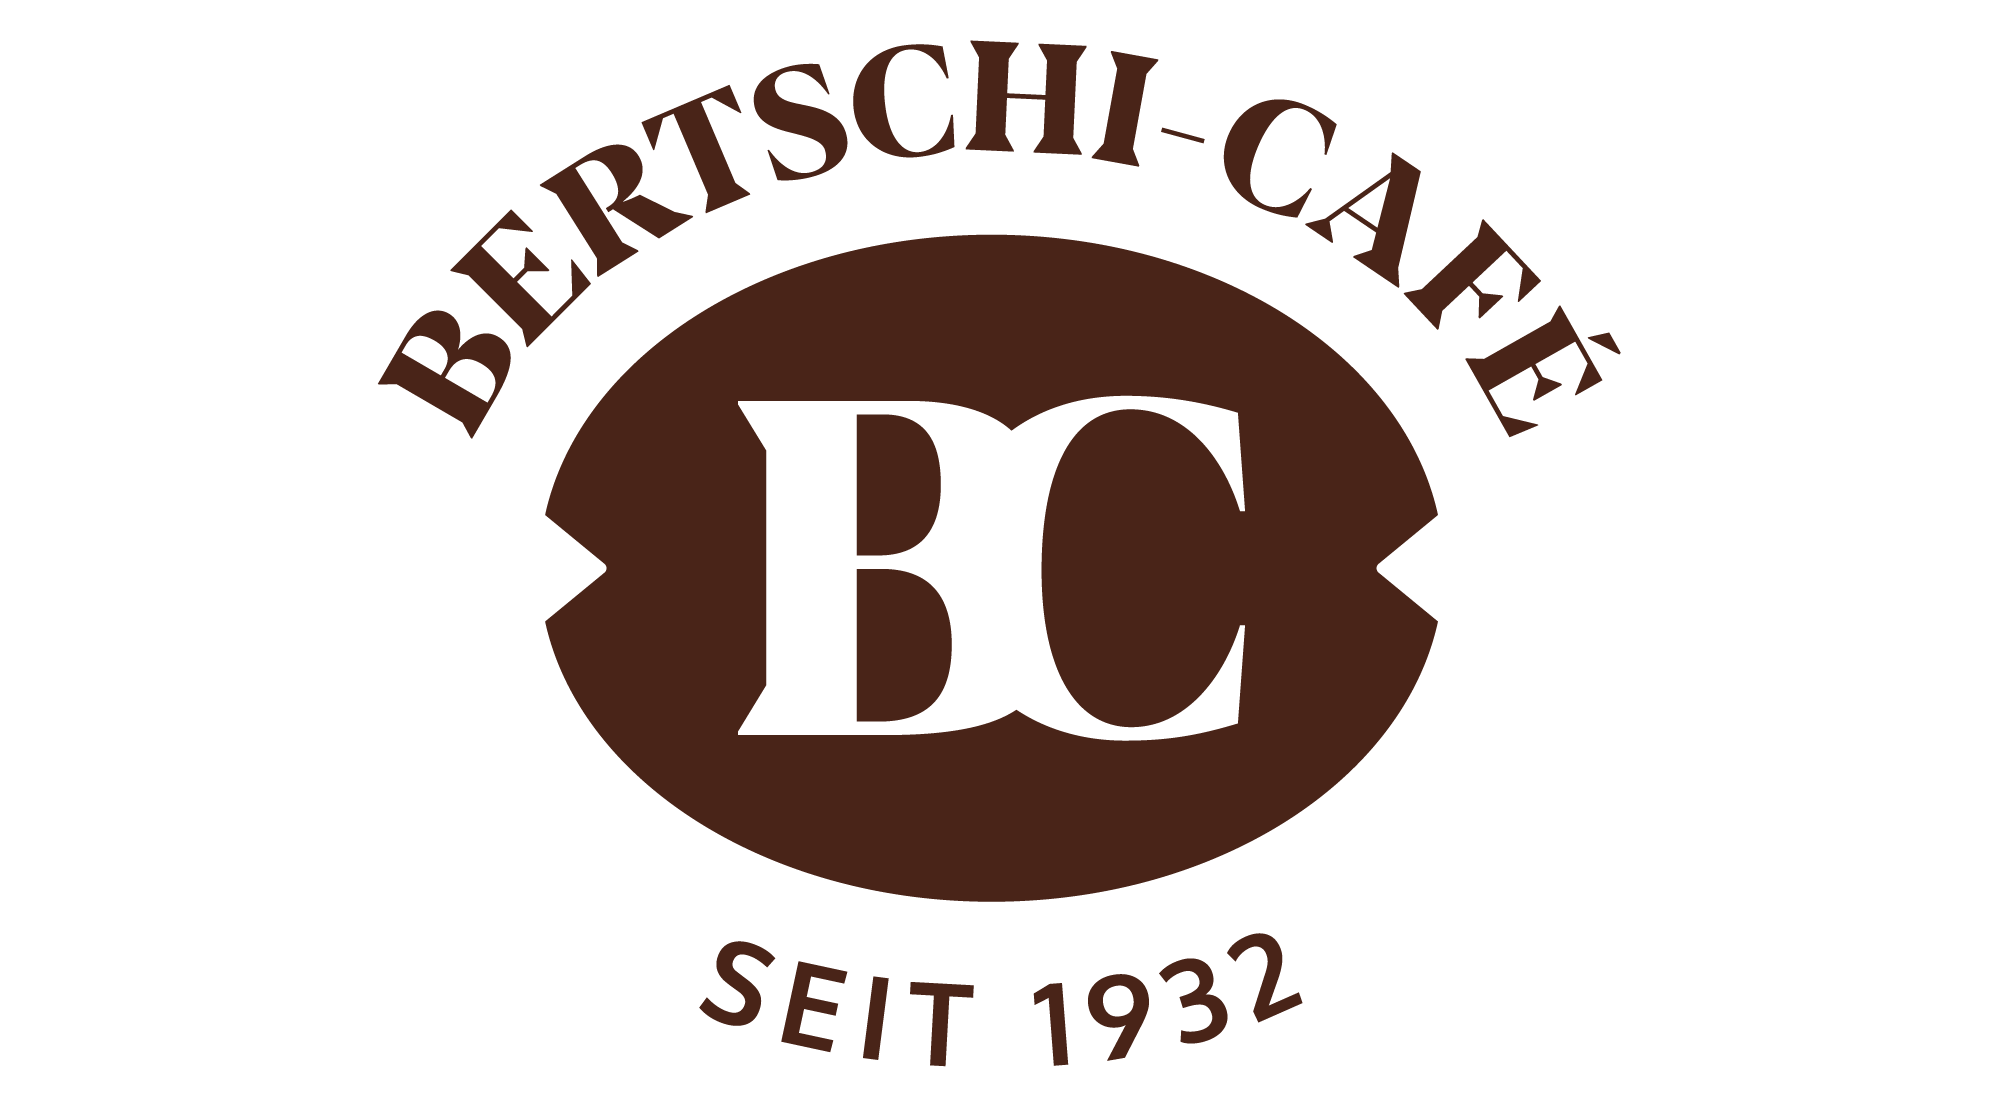 Torrefattori di caffè Bertschi Café